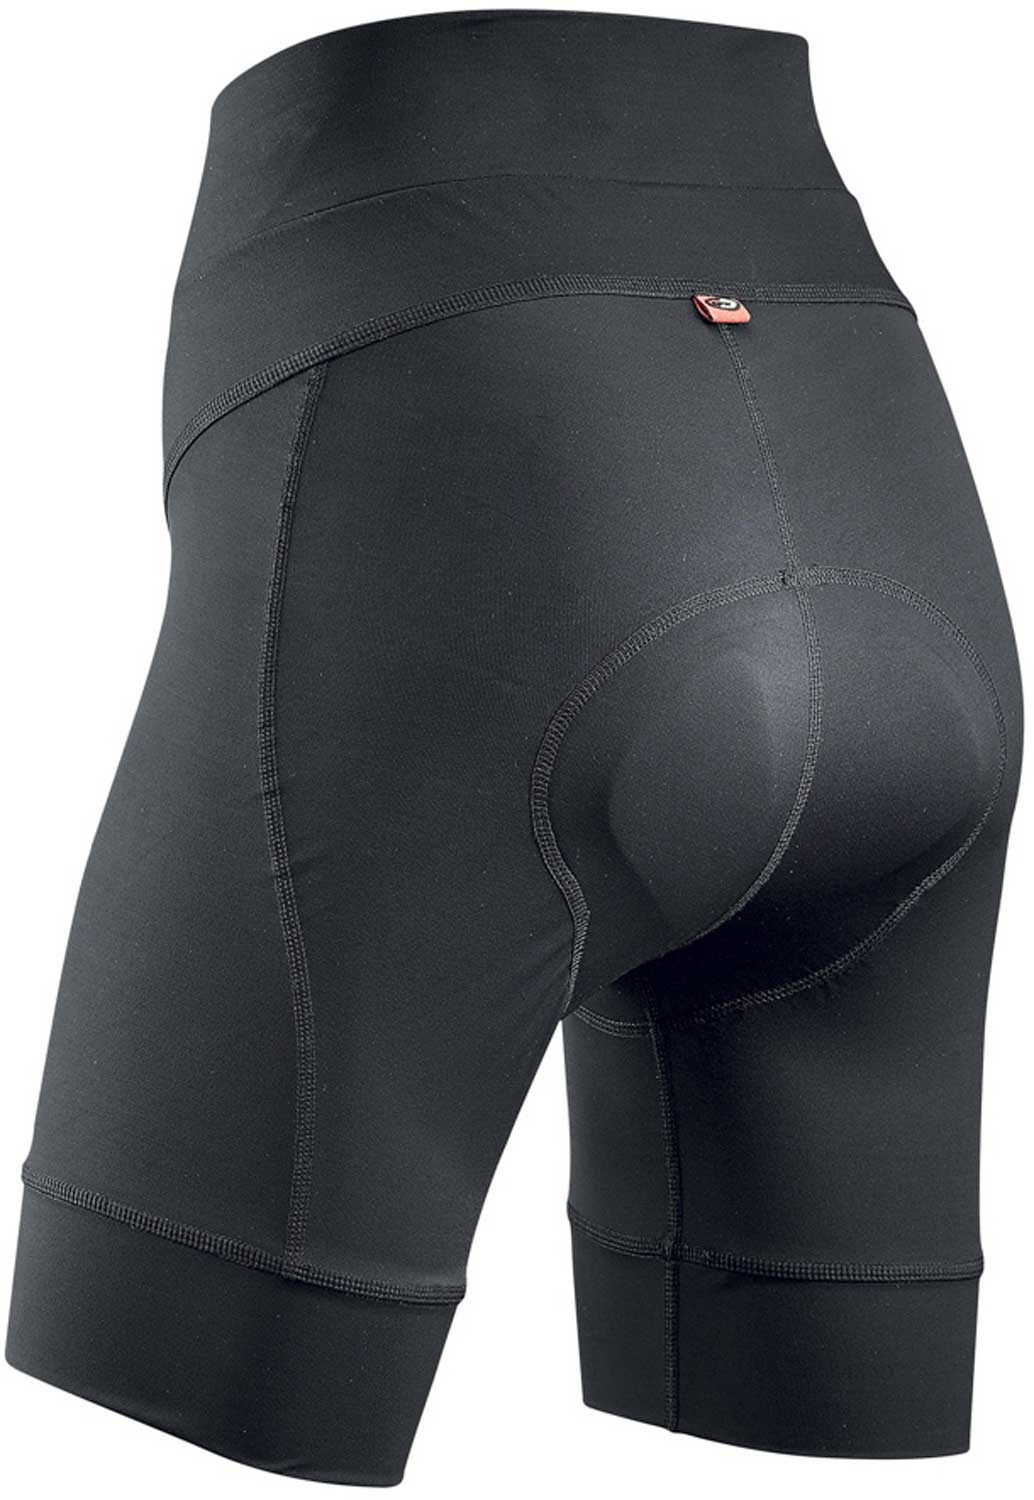 Women’s cycling shorts